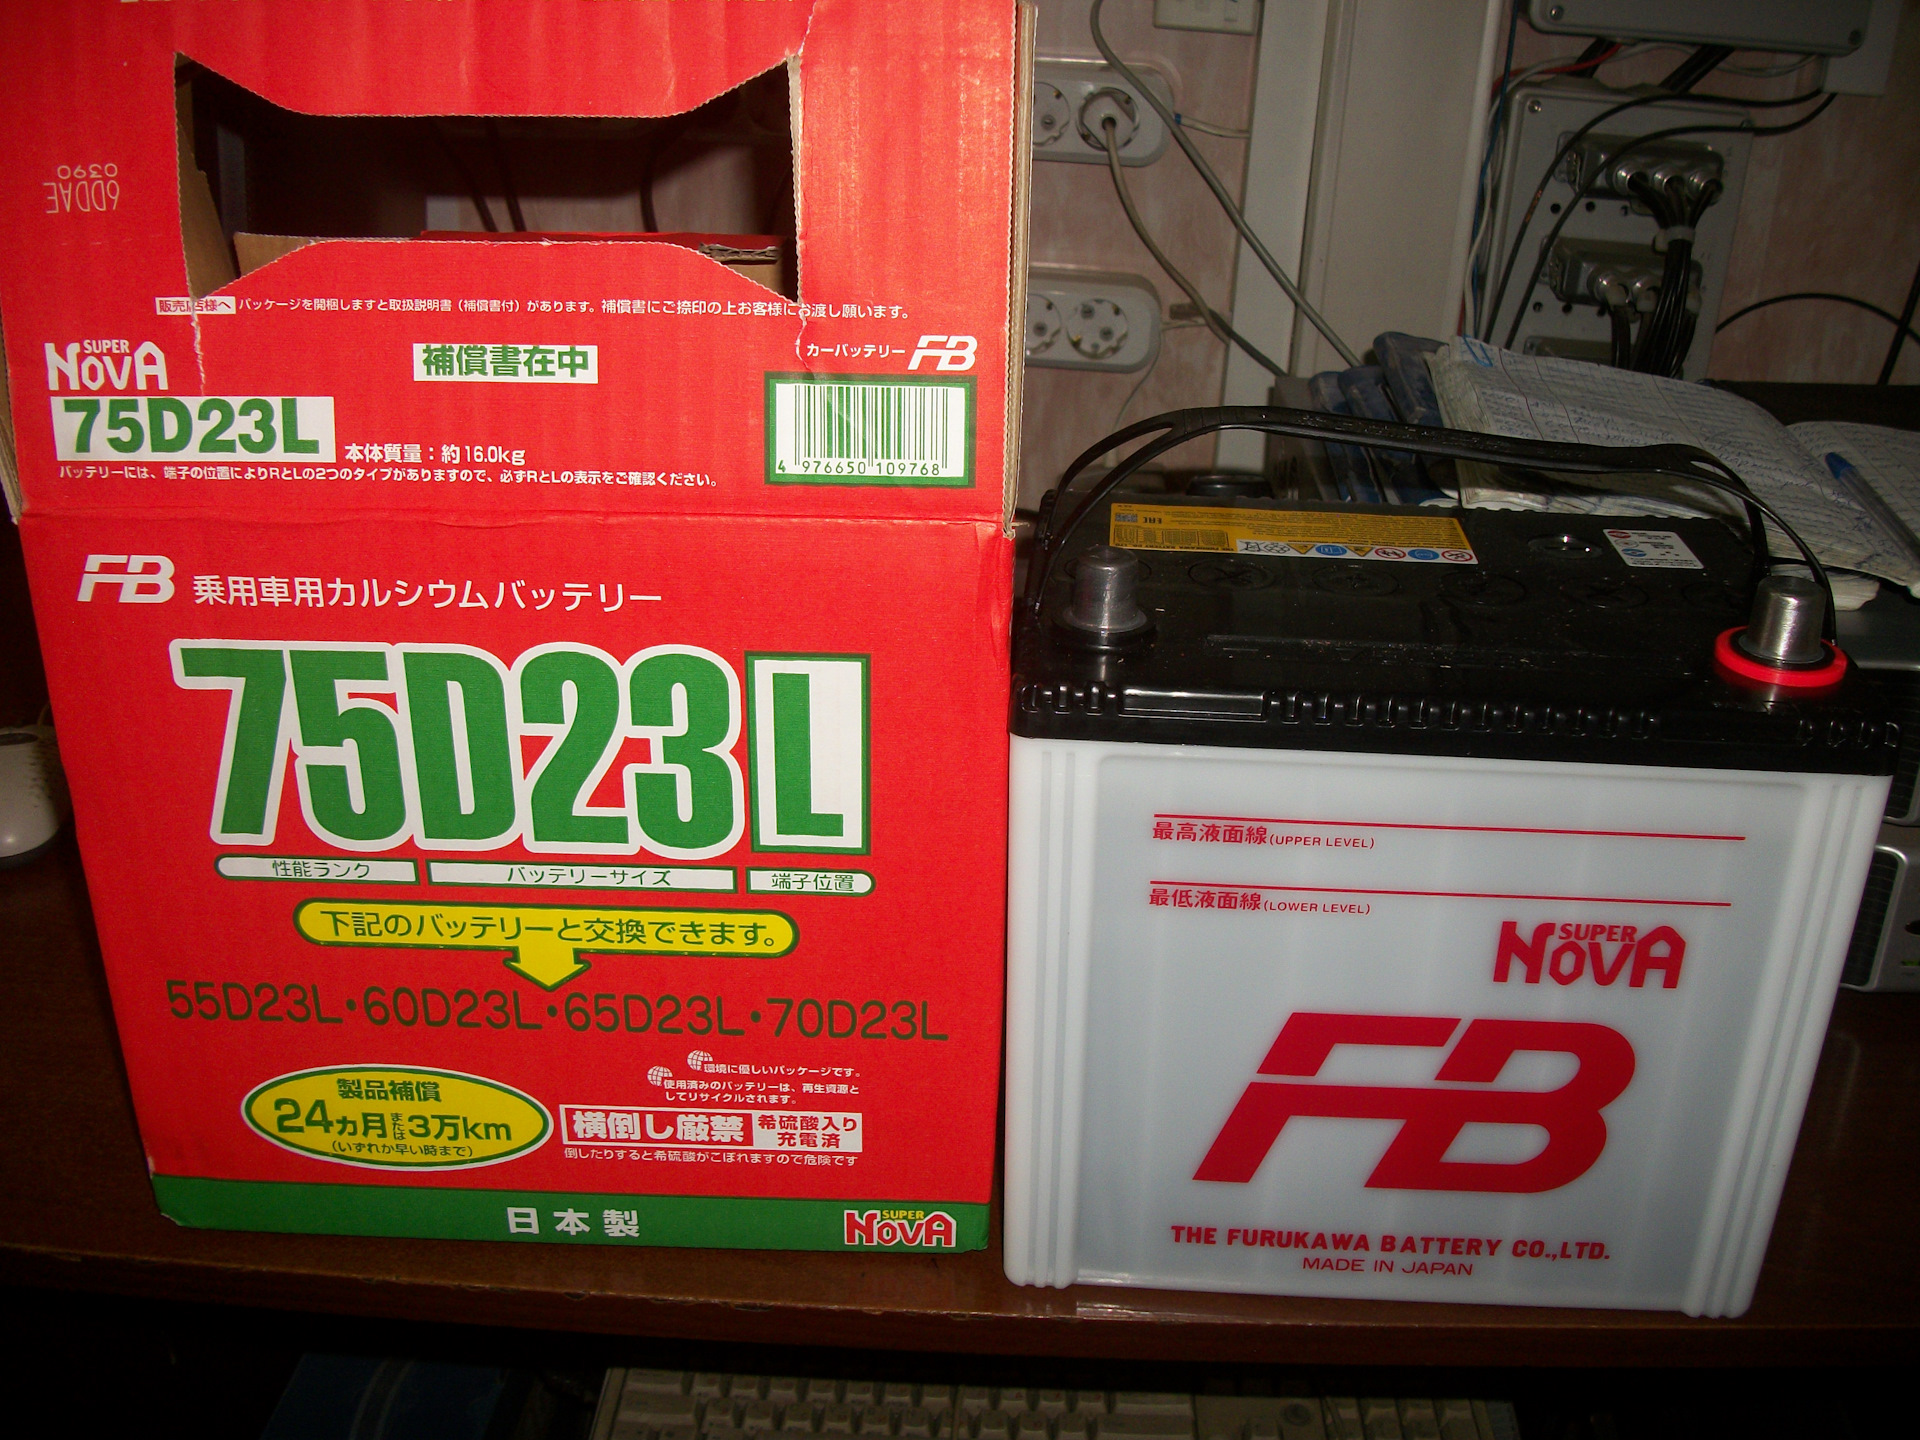 Battery 75. Furukawa super Nova 75d23l. Аккумулятор автомобильный Furukawa 75d23l. Furukawa Battery 75d23l. Супер аккумулятор аккумулятор супер Нова 75d23l.